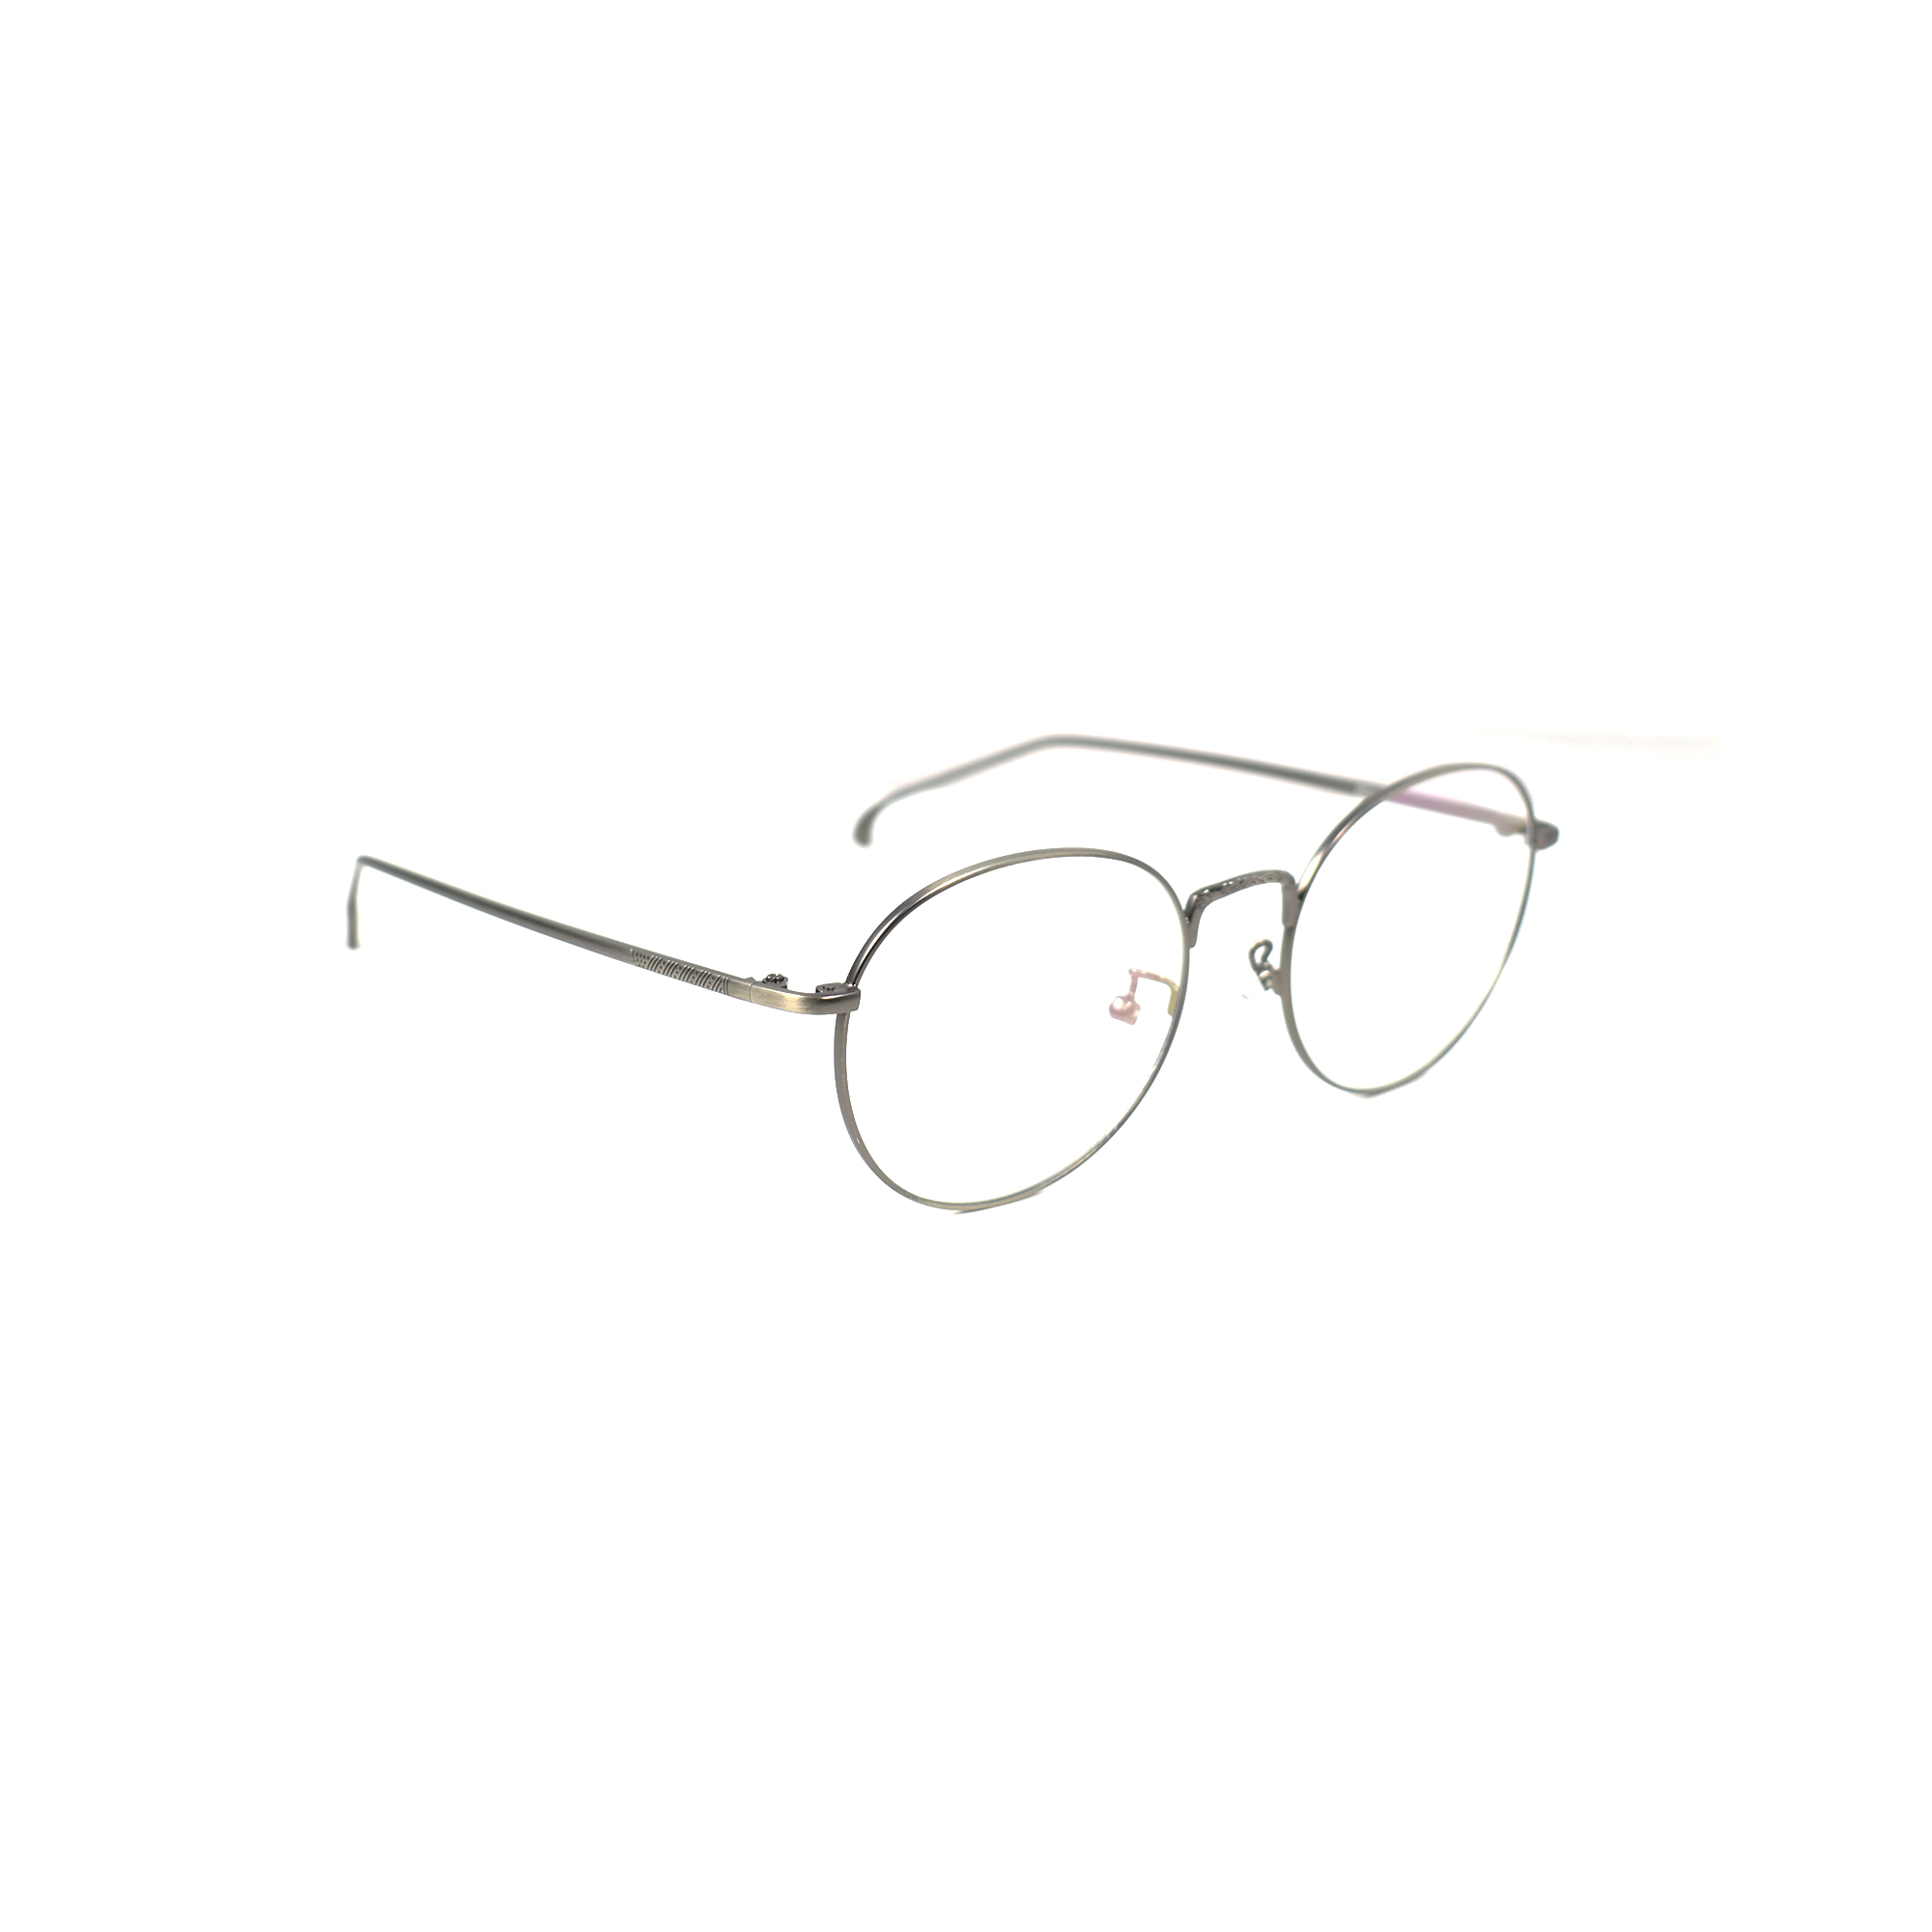 Andrew Thin Frame Glasses